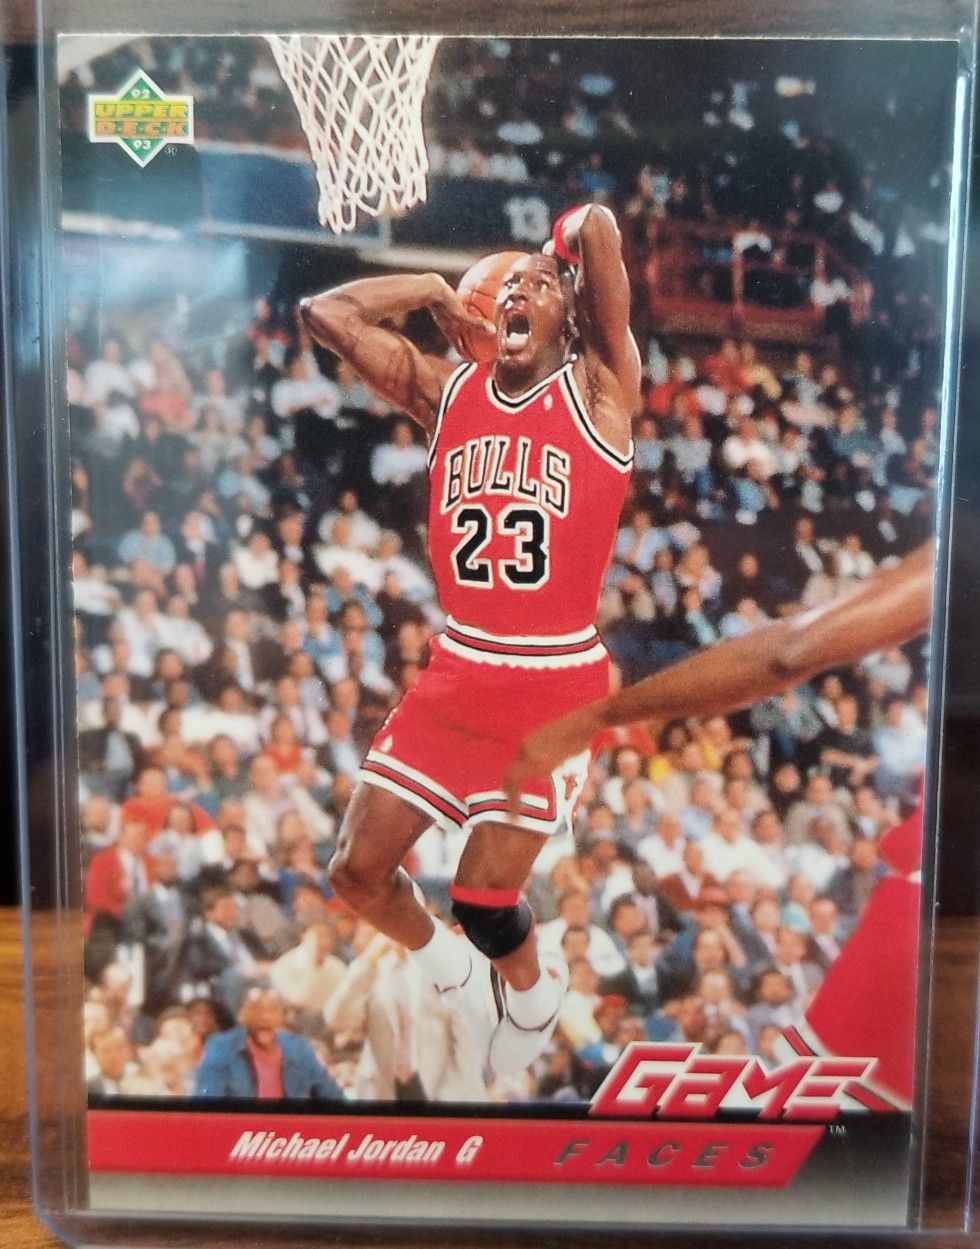 1993 Upper Deck Michael Jordan Game Face